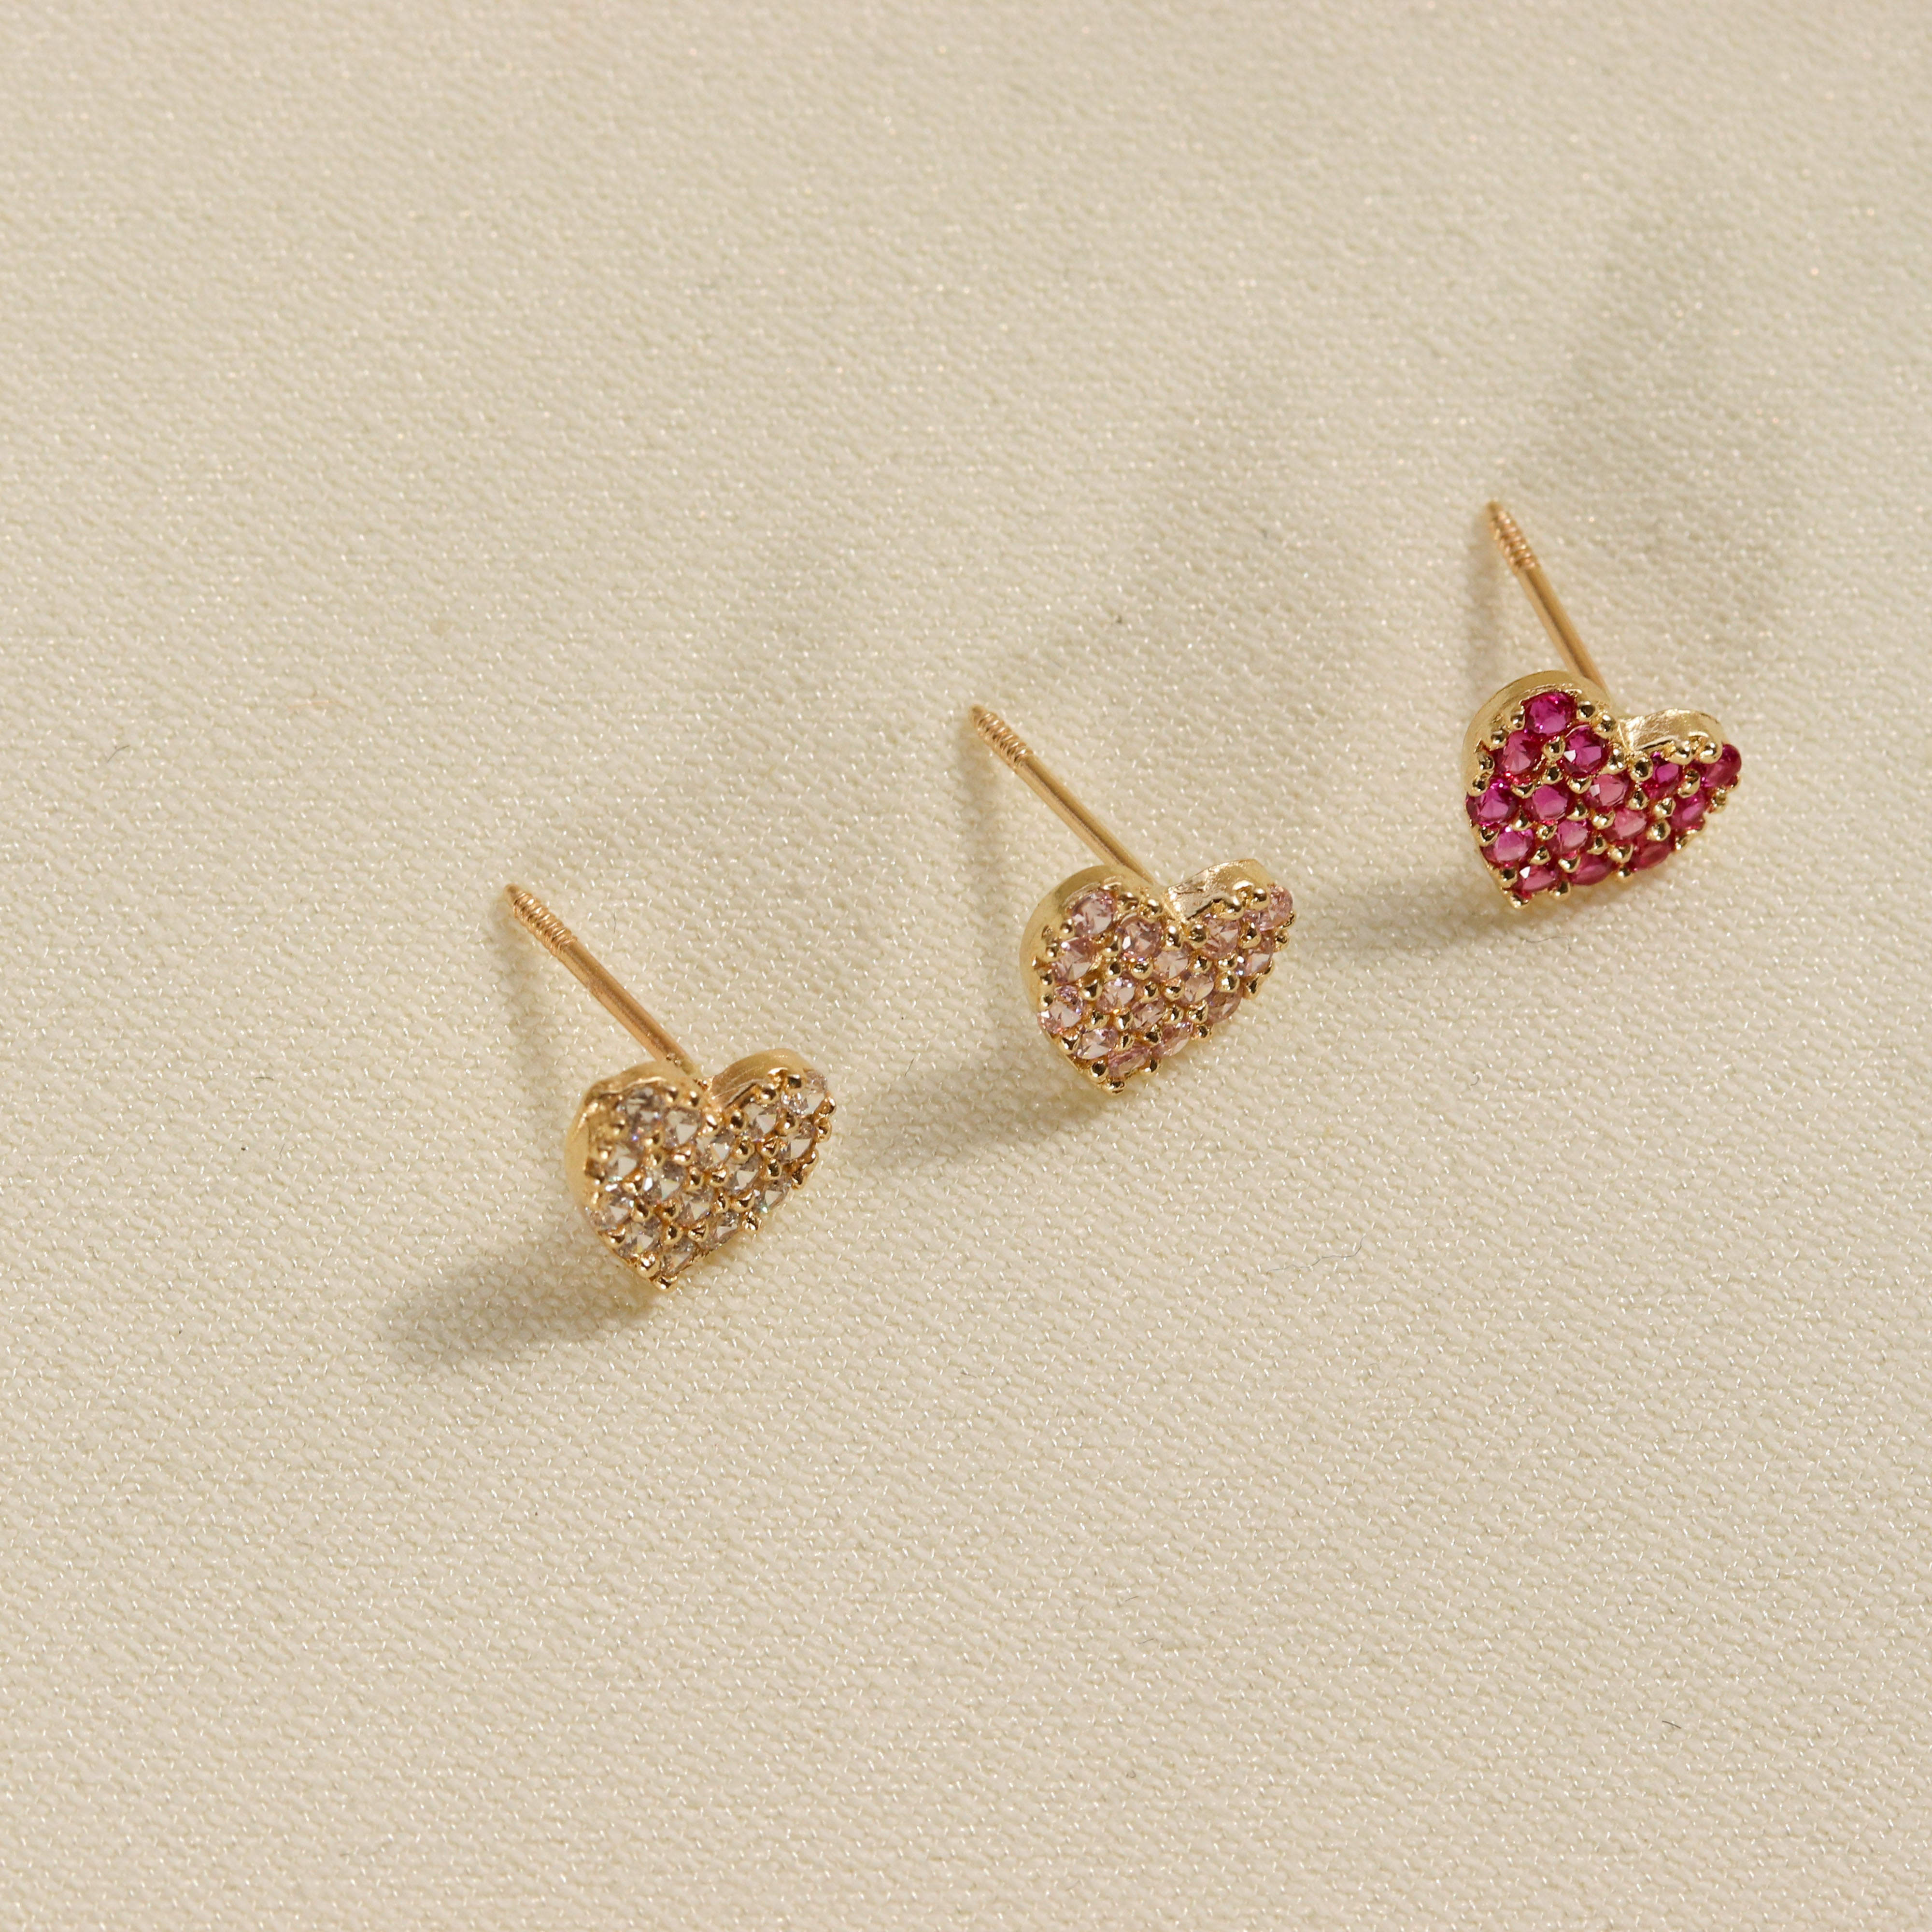 Valentine Gold Plated Hoop Earring White Stone Heart Designs ER3938